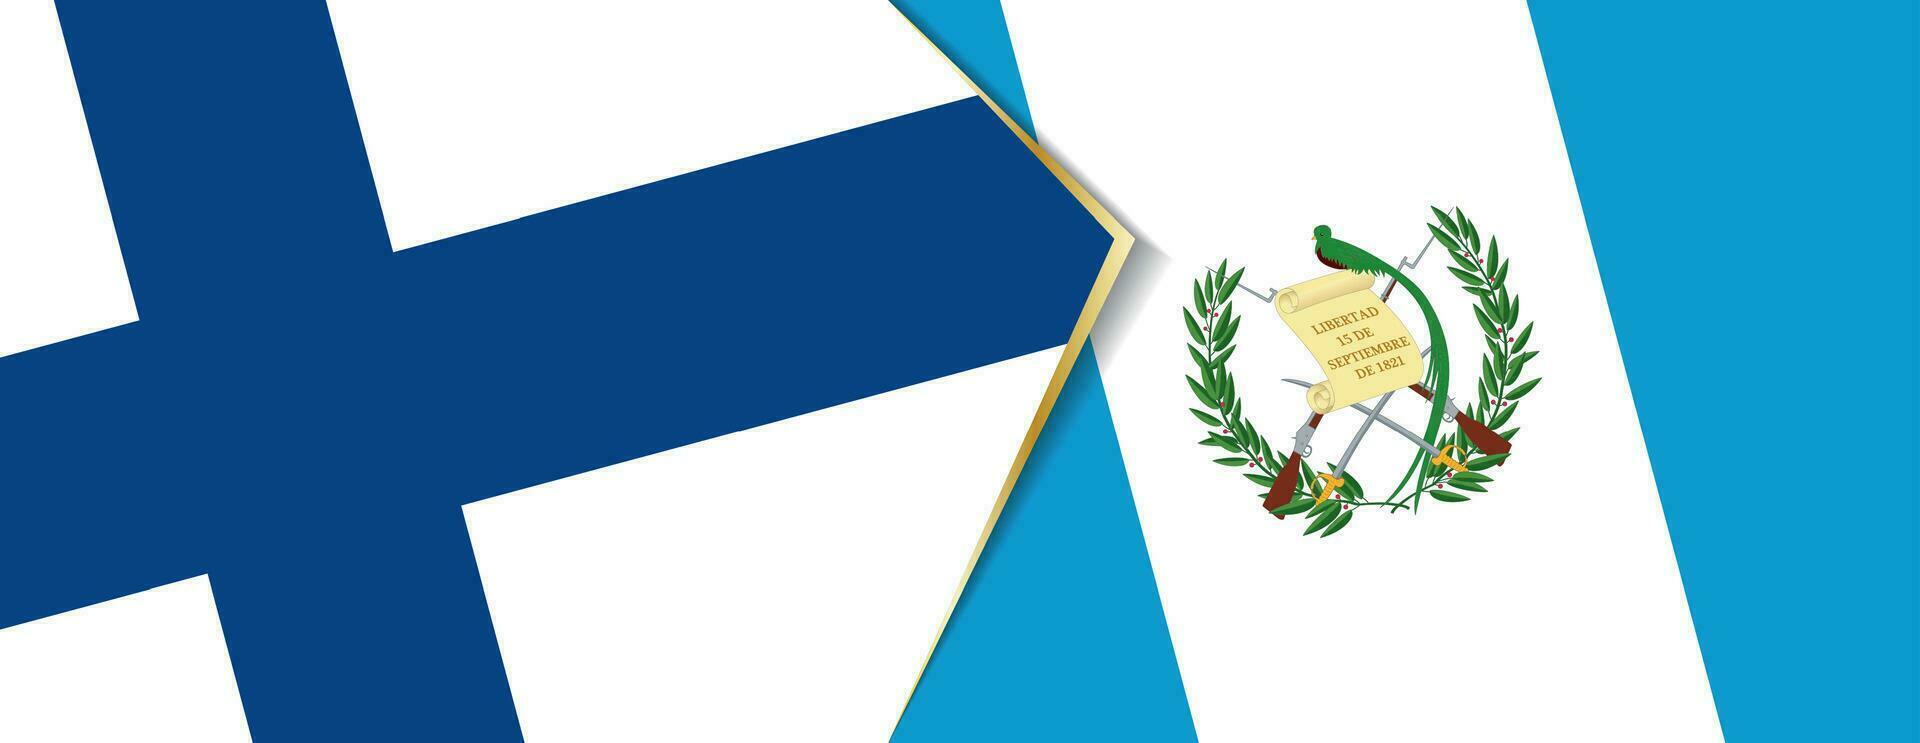 Finlandia y Guatemala banderas, dos vector banderas